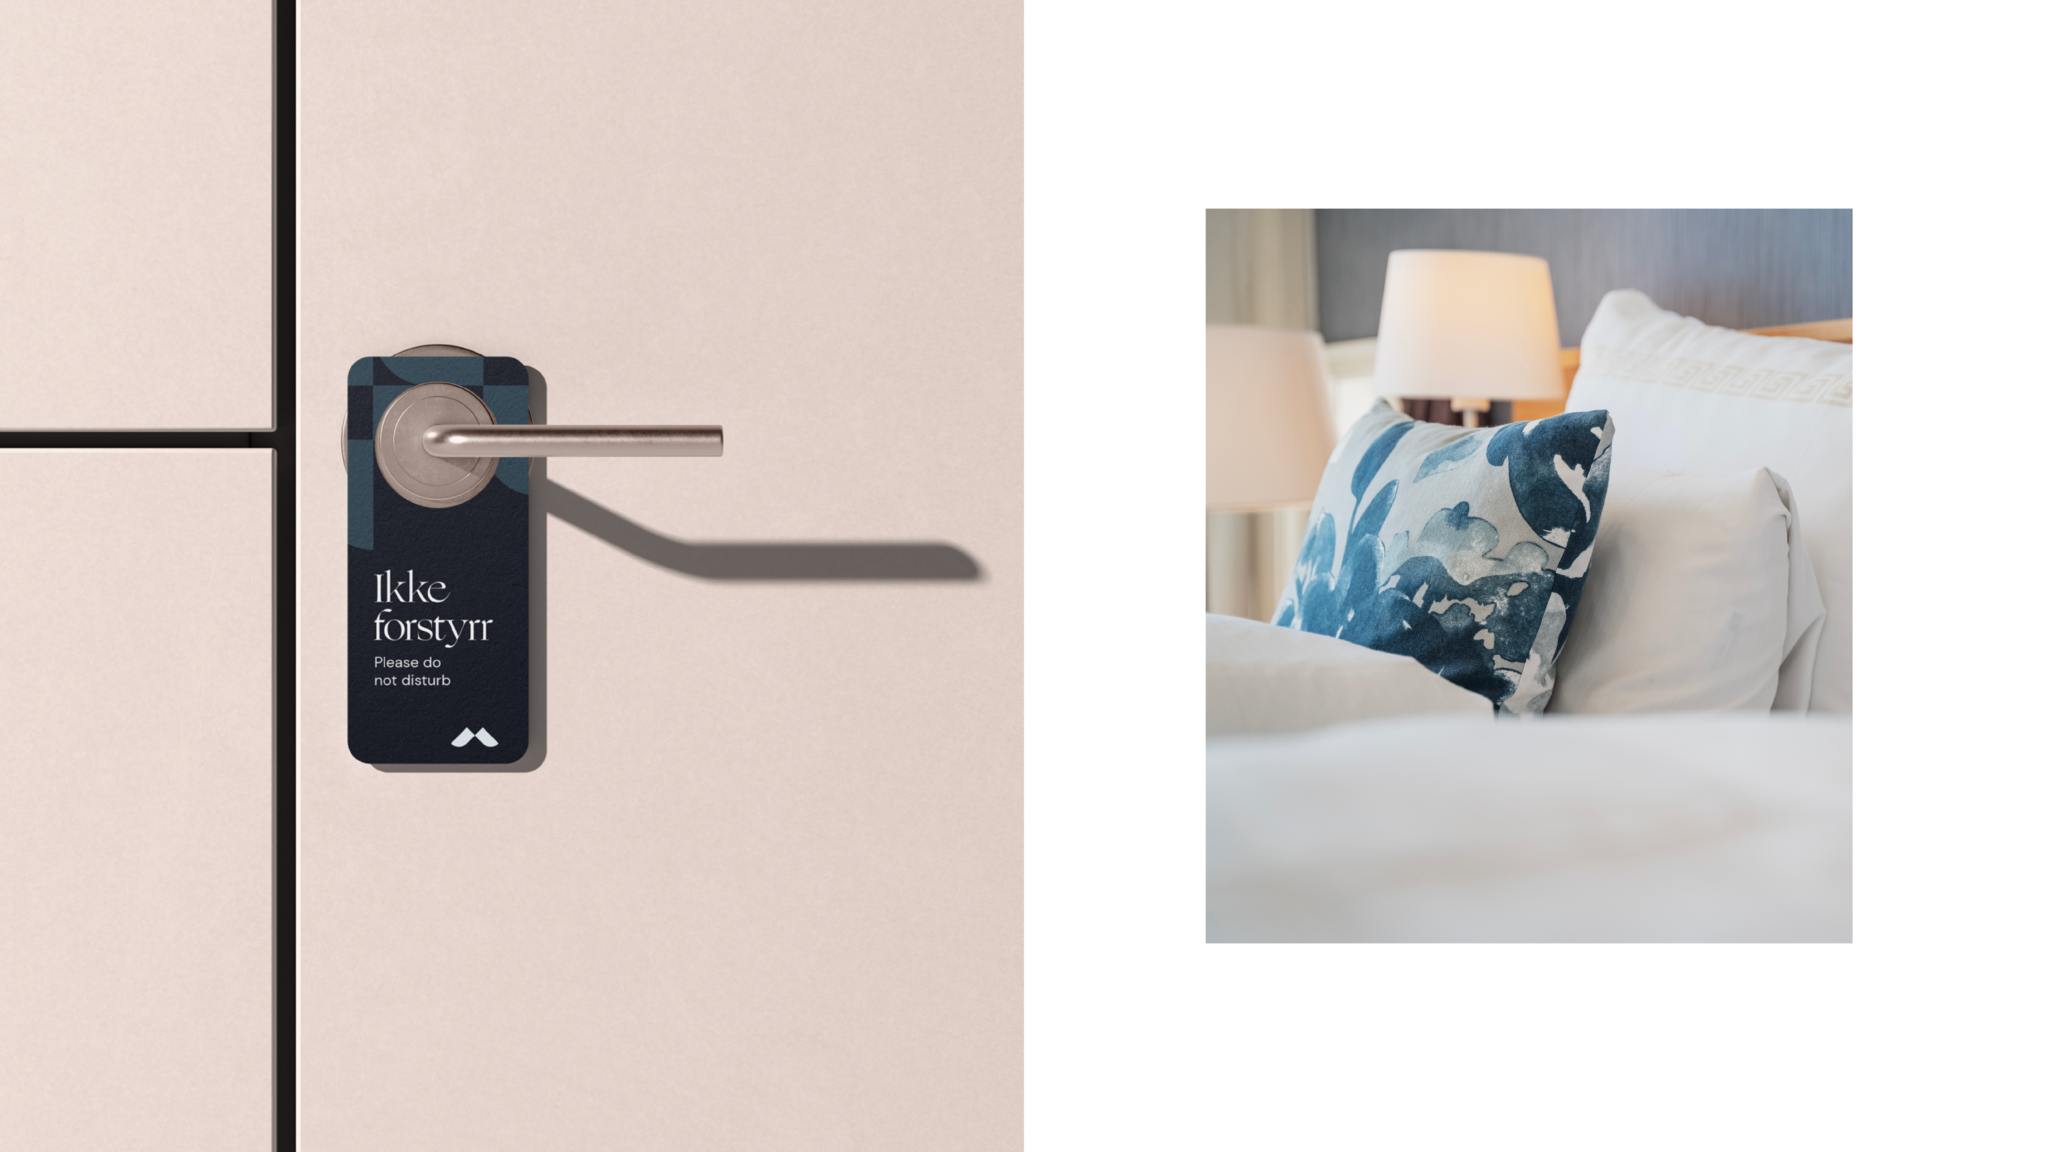 Foto viser en dør med et ikke-forstyrr skilt for Molde fjordhotell, og et foto av et hotellrom med en seng og en blå pute.